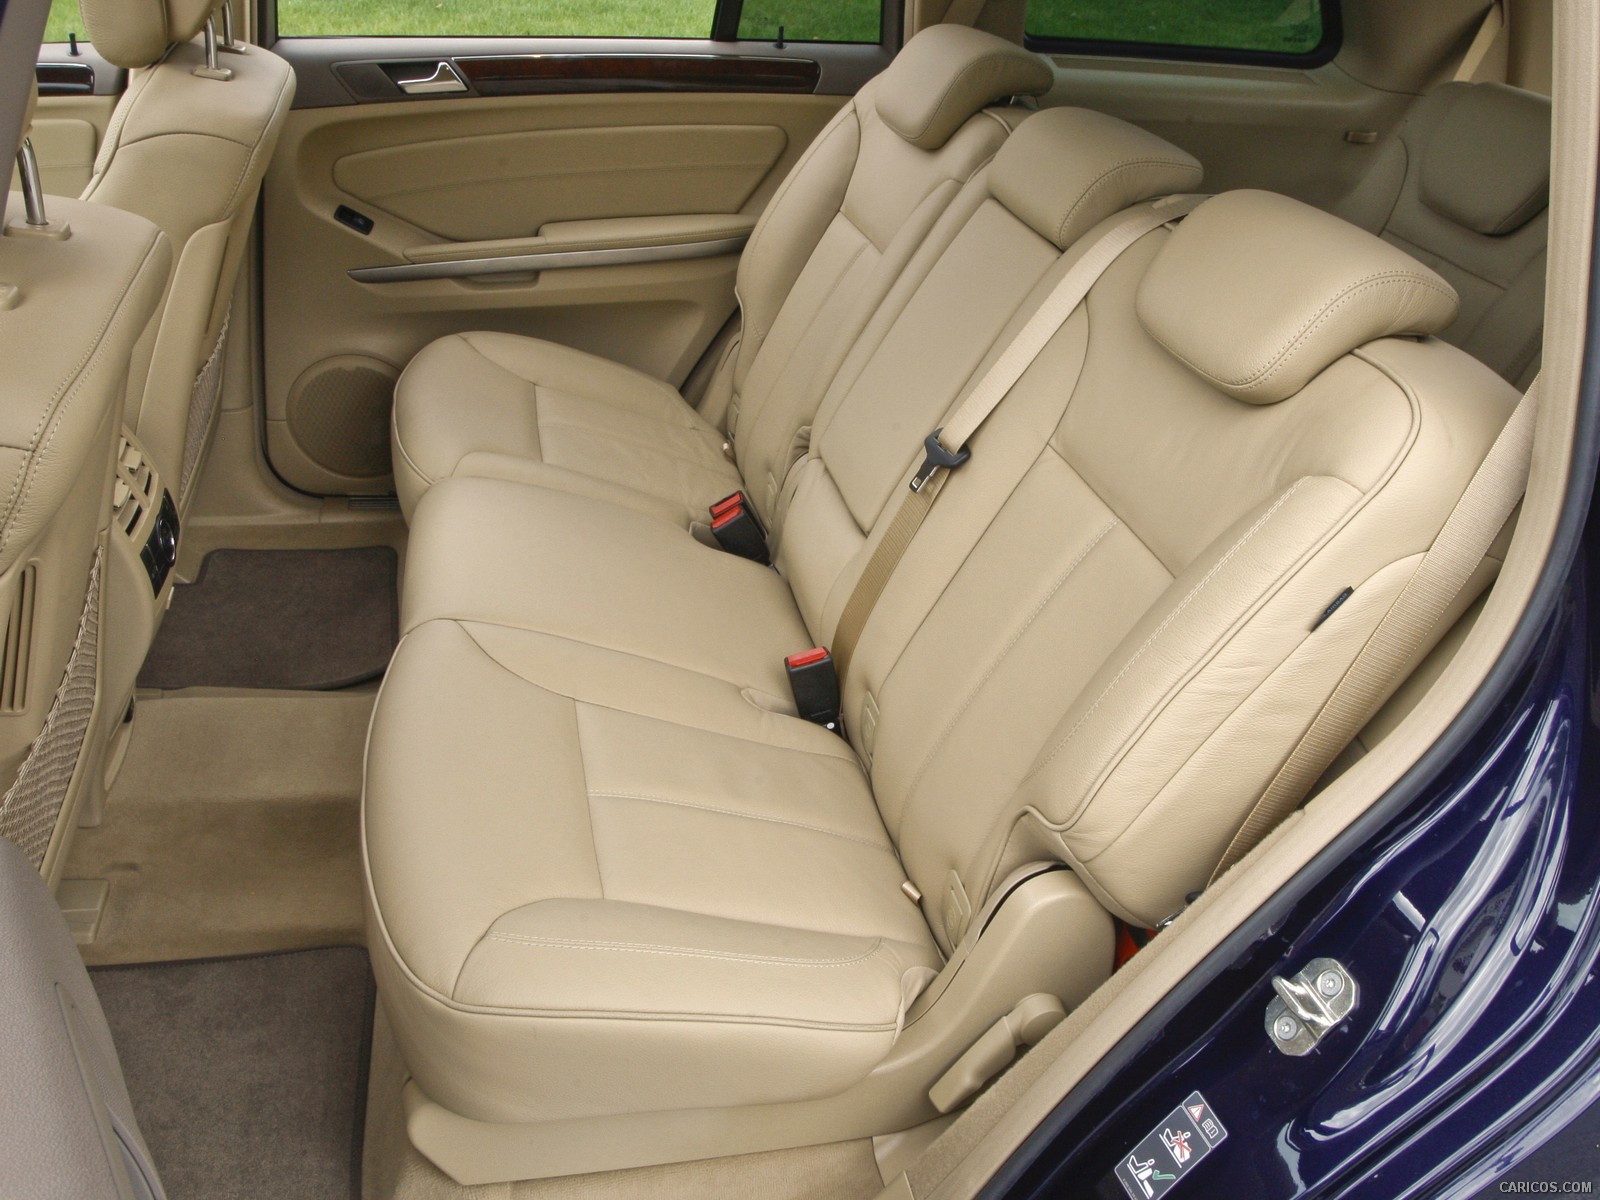 2010 Mercedes-Benz GL450 - Interior Rear Seats, #103 of 112